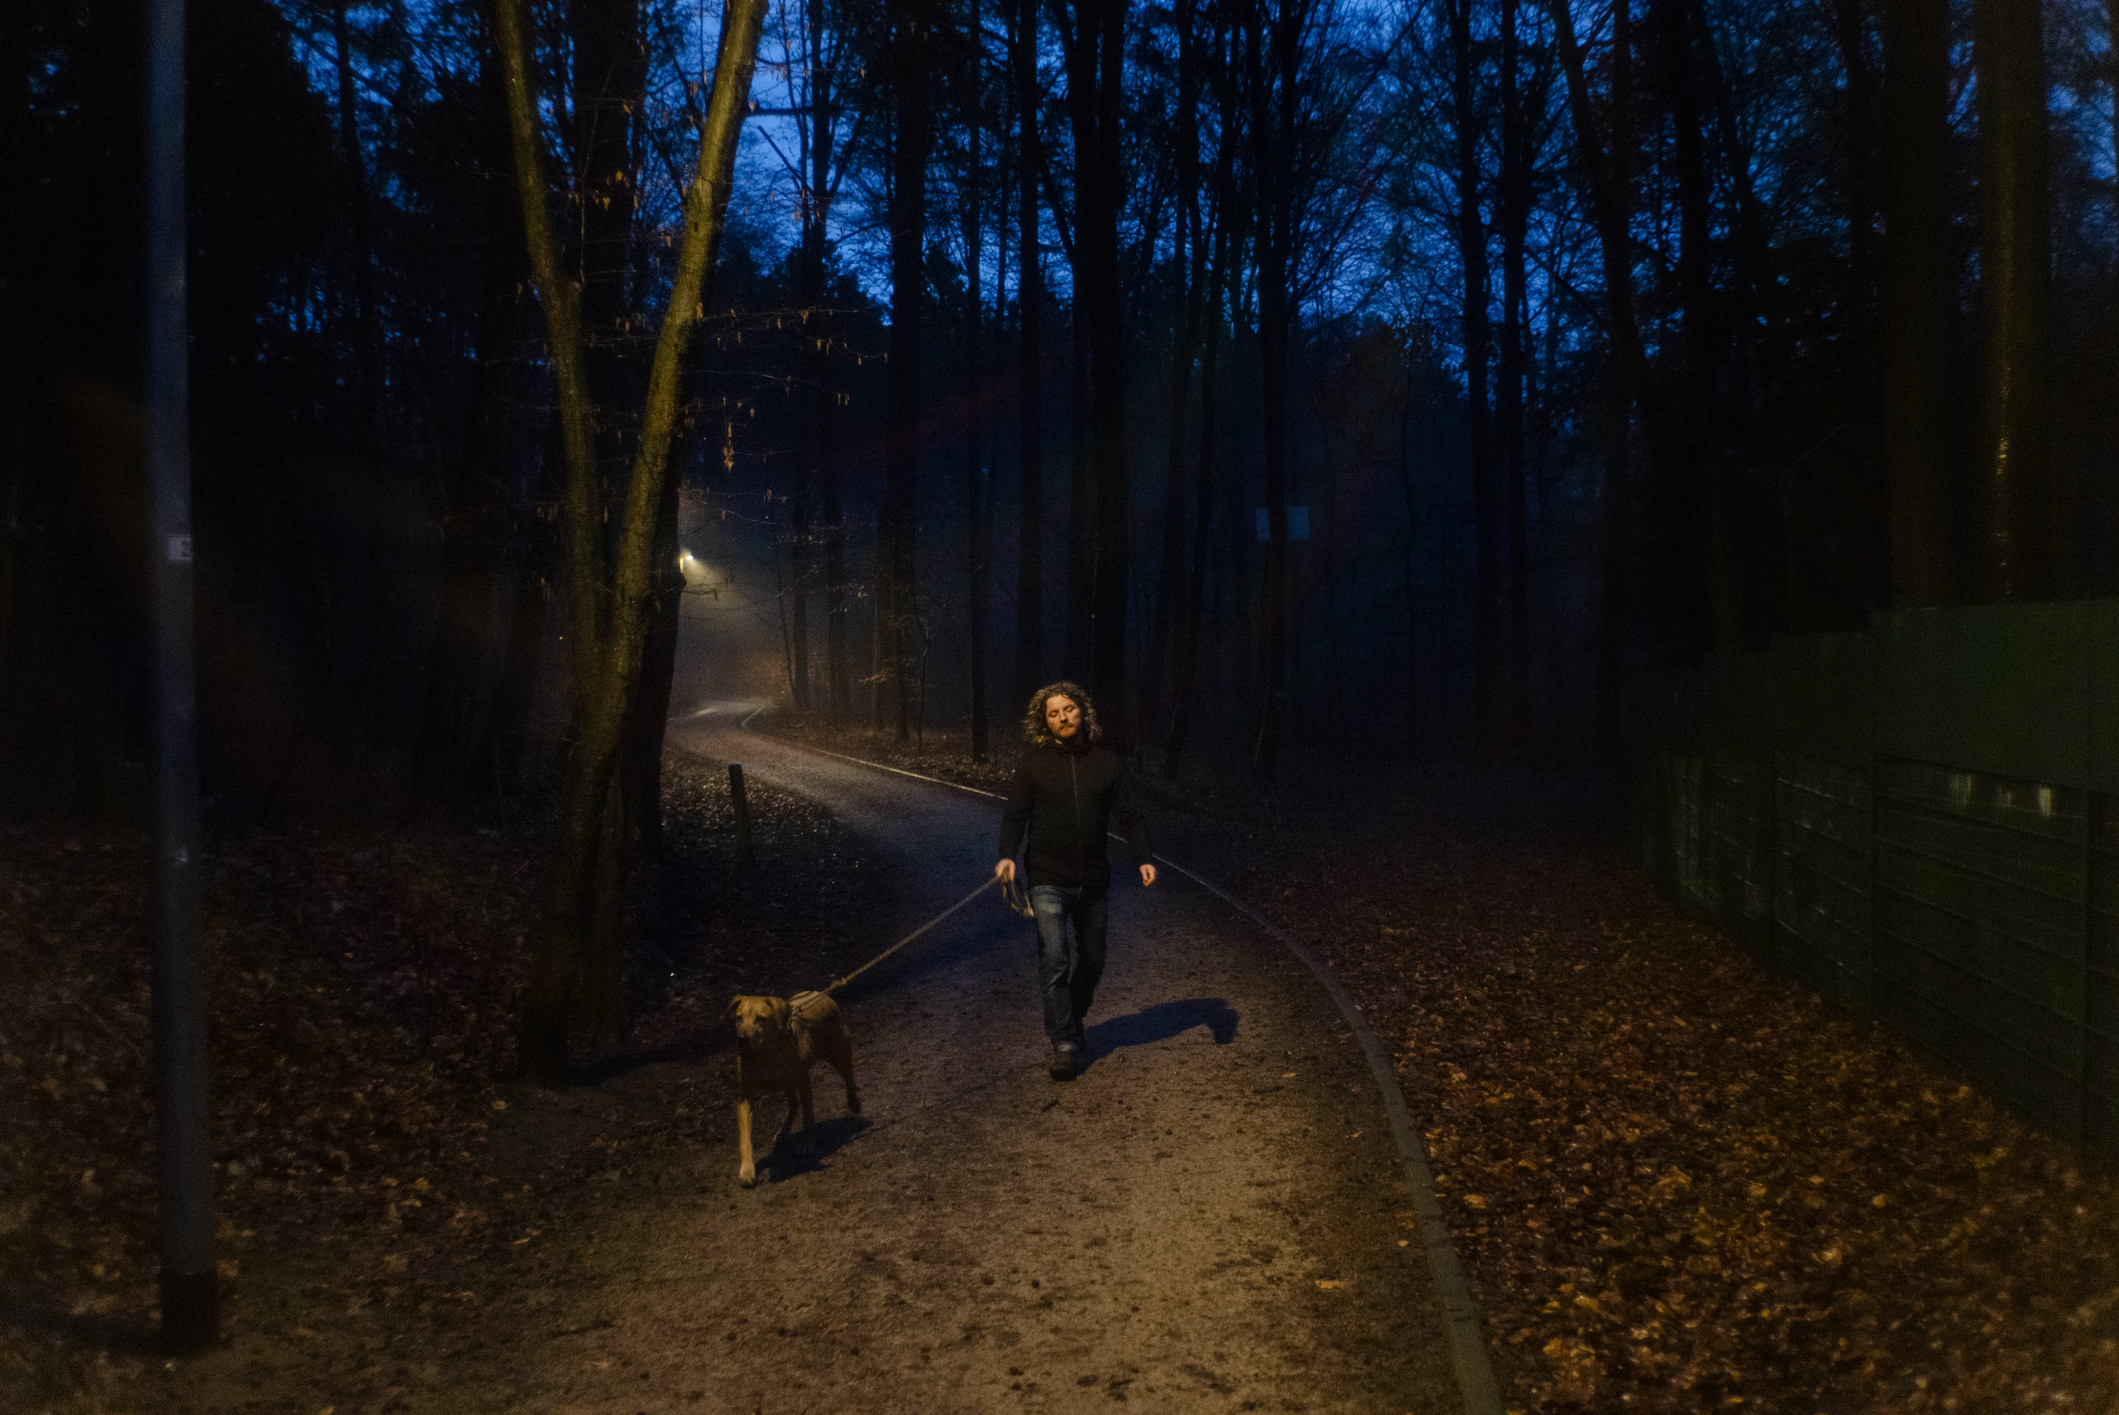 Man walking dog at night